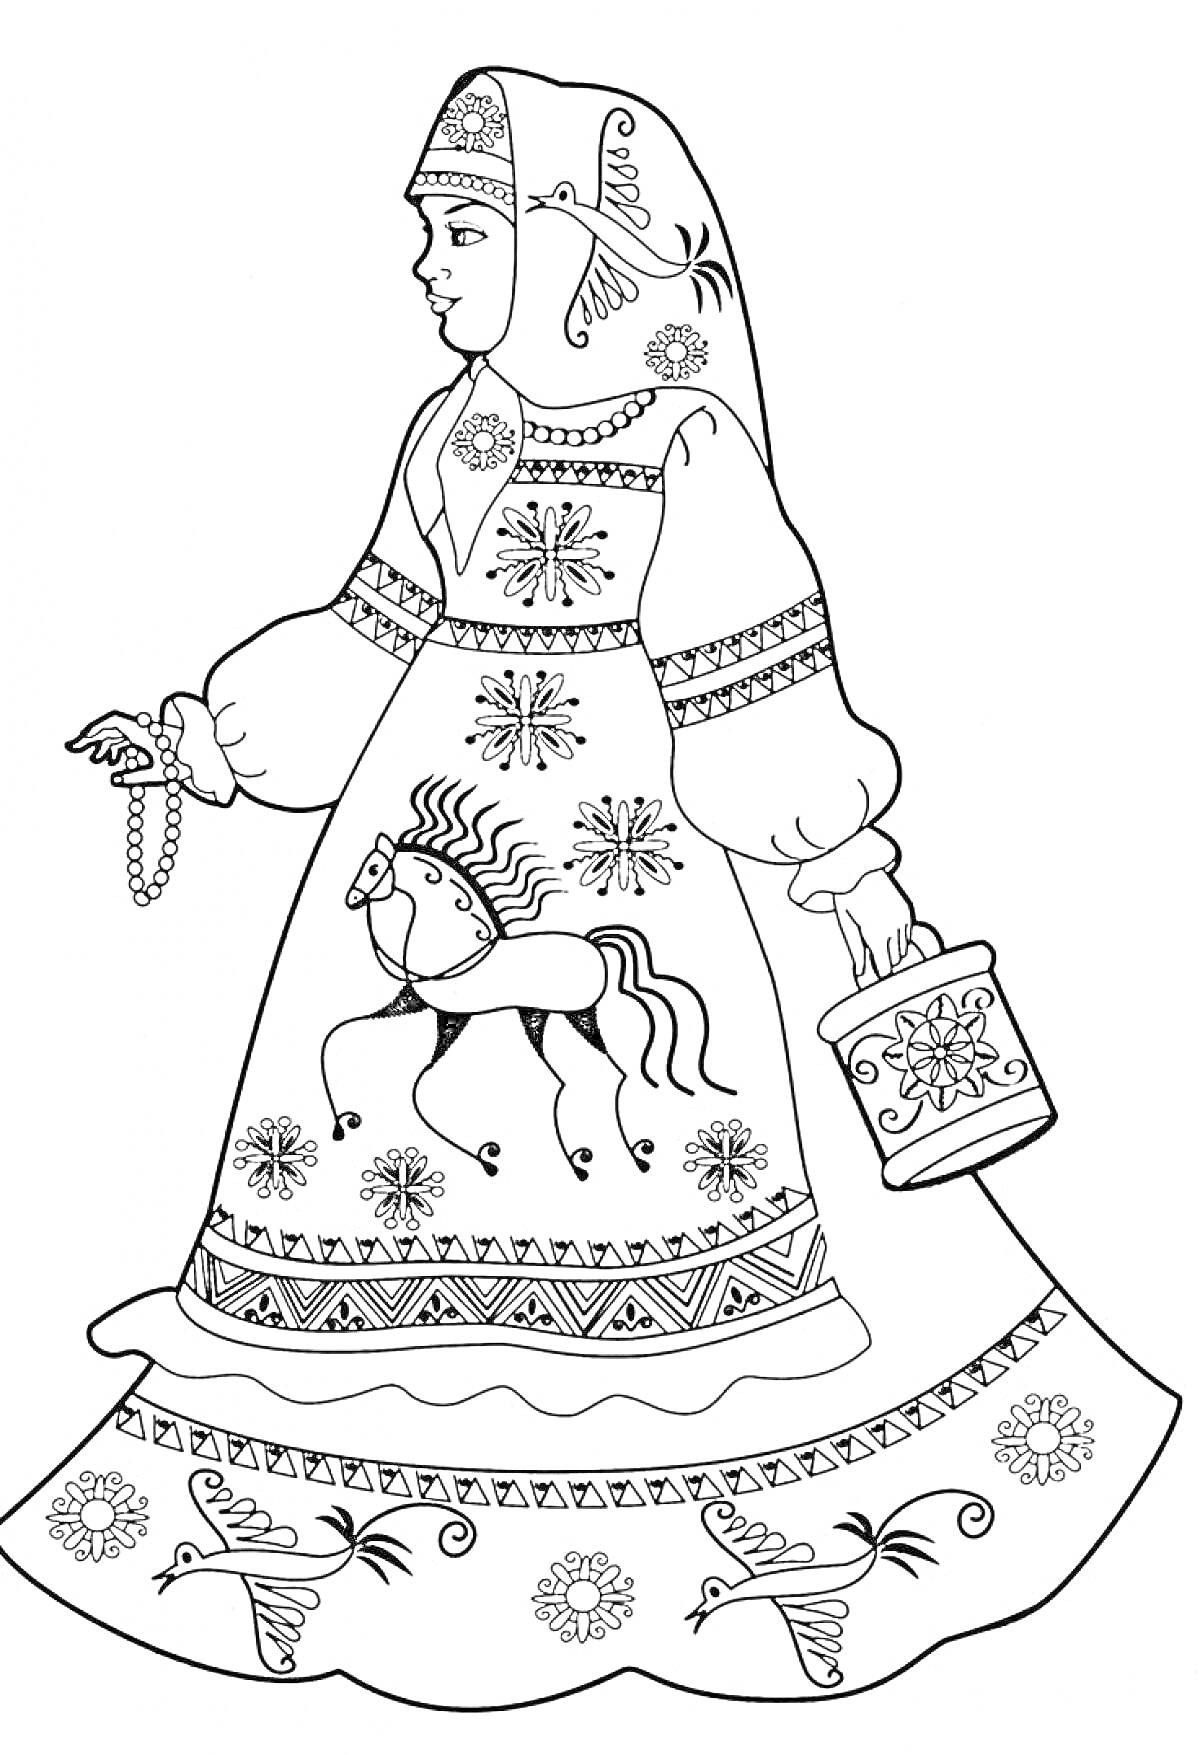 Девочка в русском народном костюме с блестками, украшенным цветами, лошадью и узорами, держащая ведерко и ягодную кисть